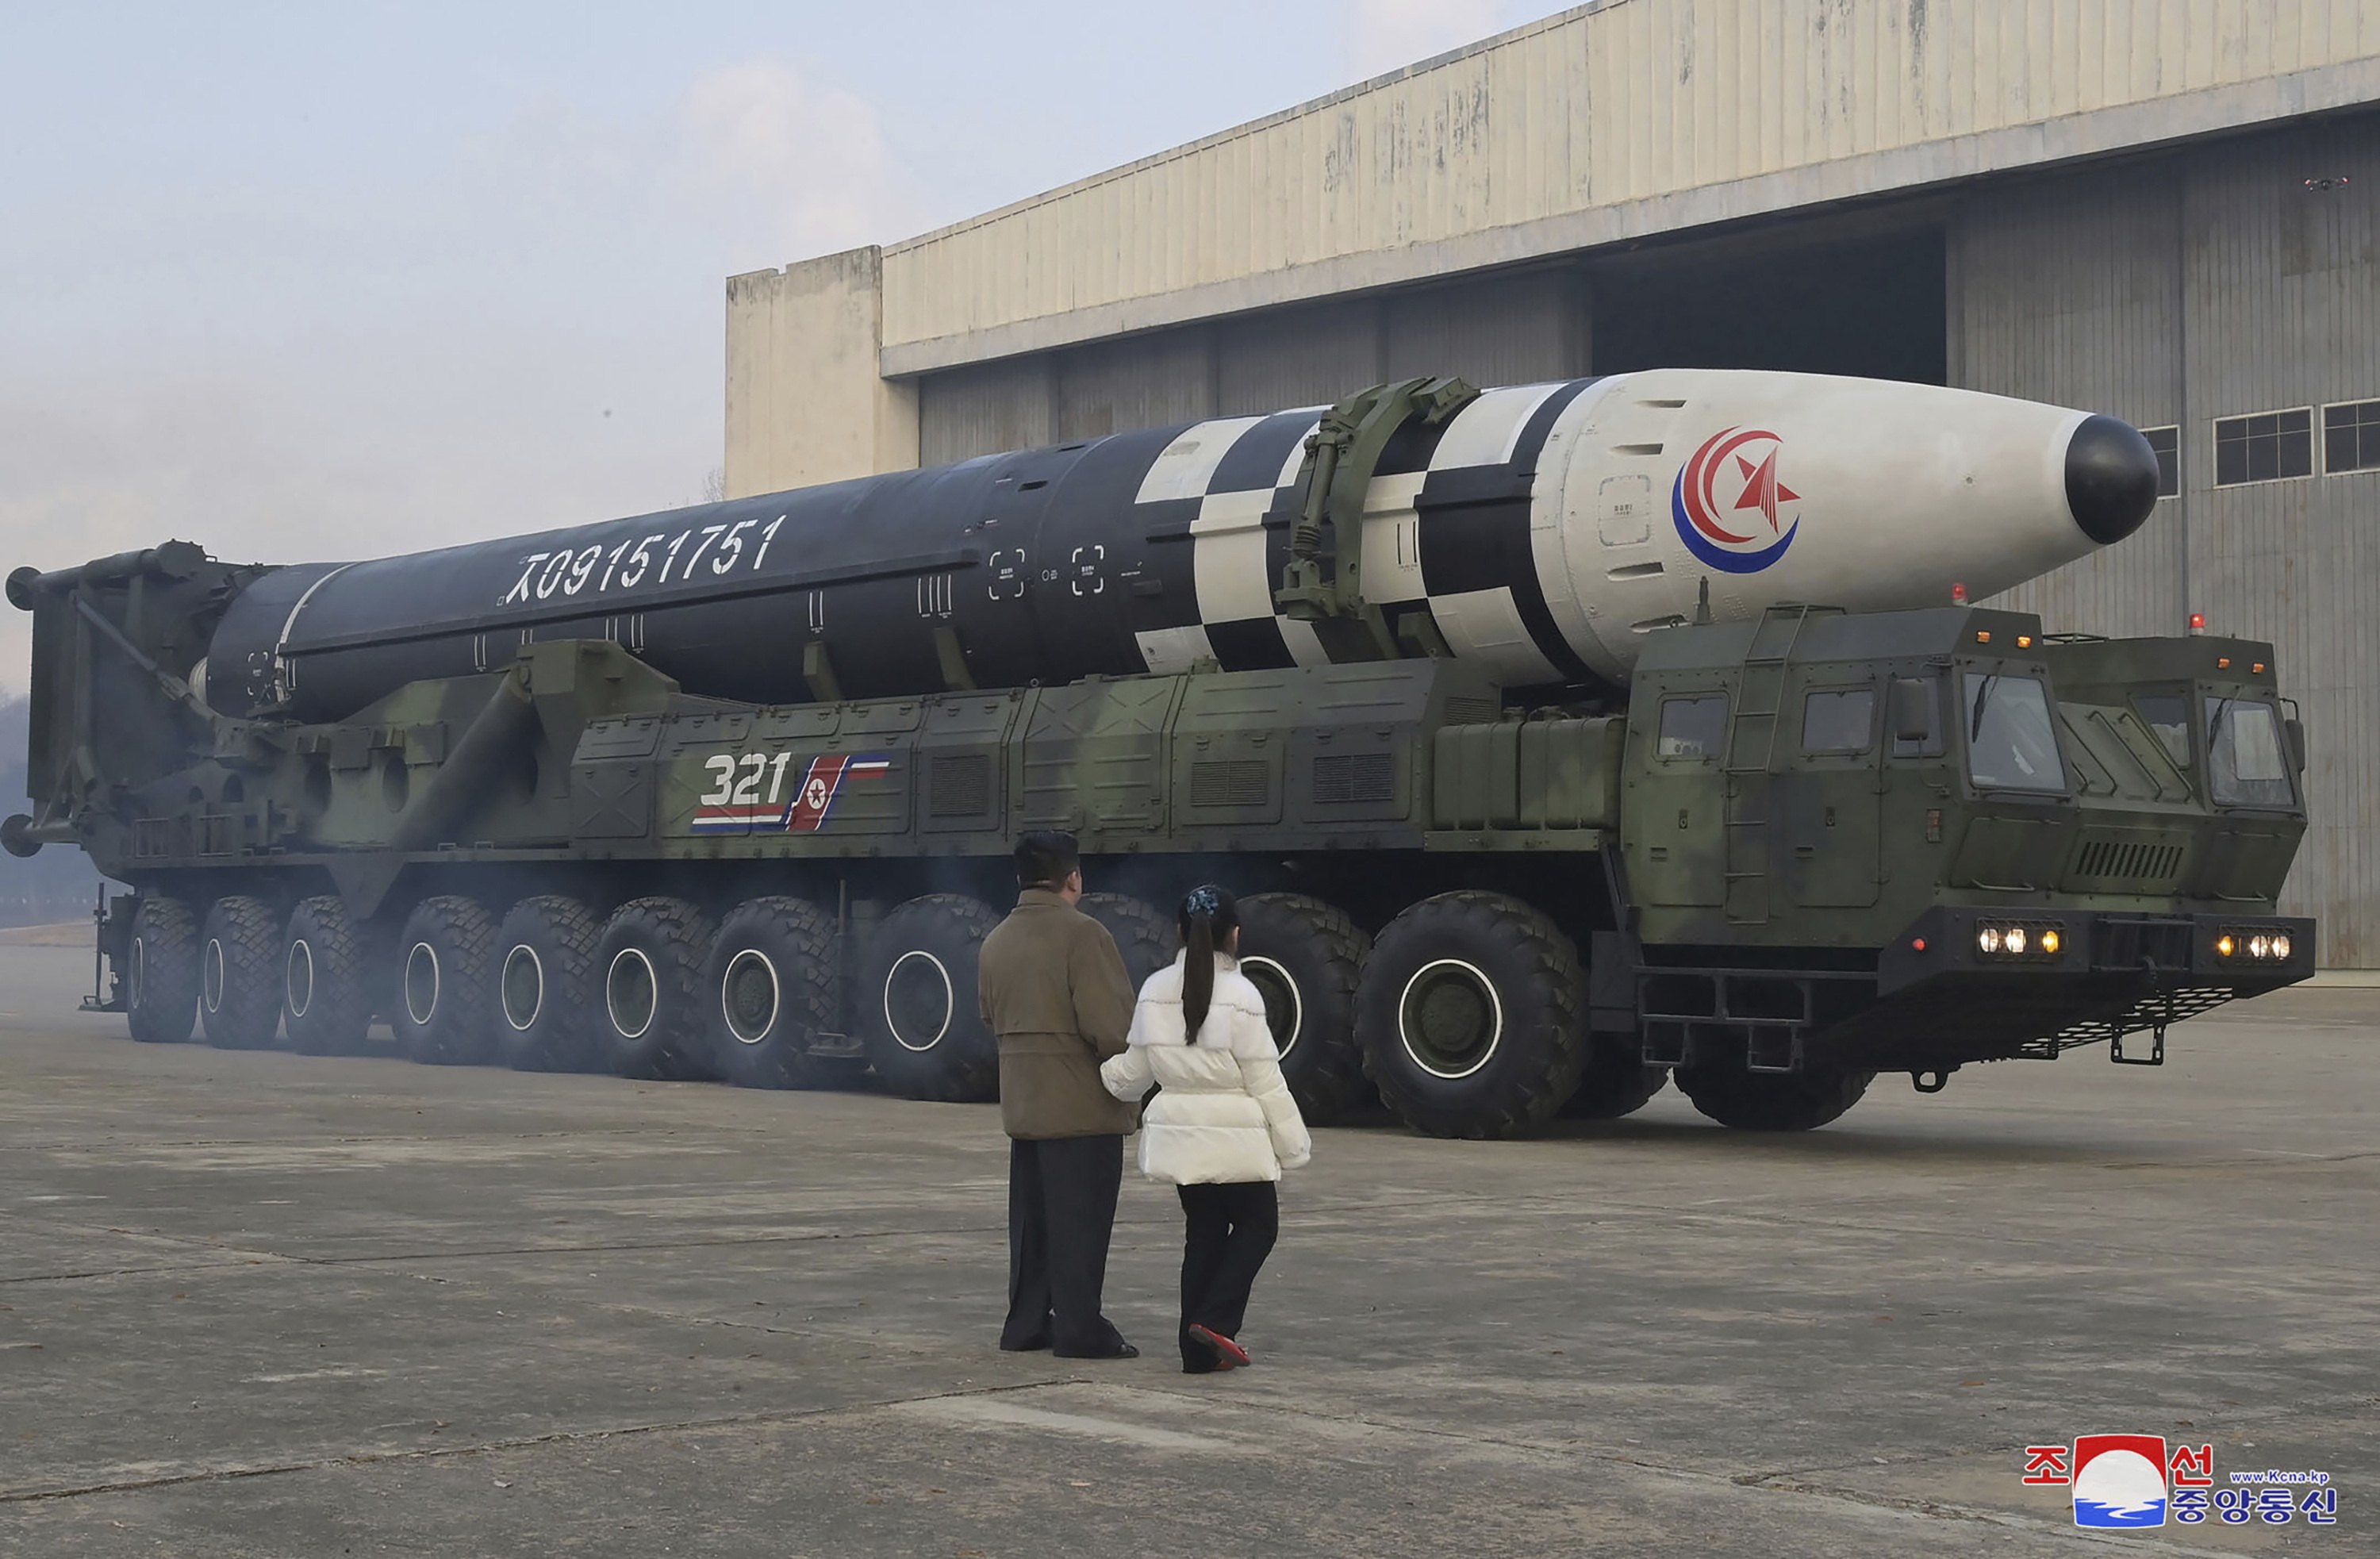 Coreea de Nord îşi arată forţa: Ţara a prezentat cel mai mare număr de rachete nucleare din istorie în cadrul unei parade desfăşurate recent